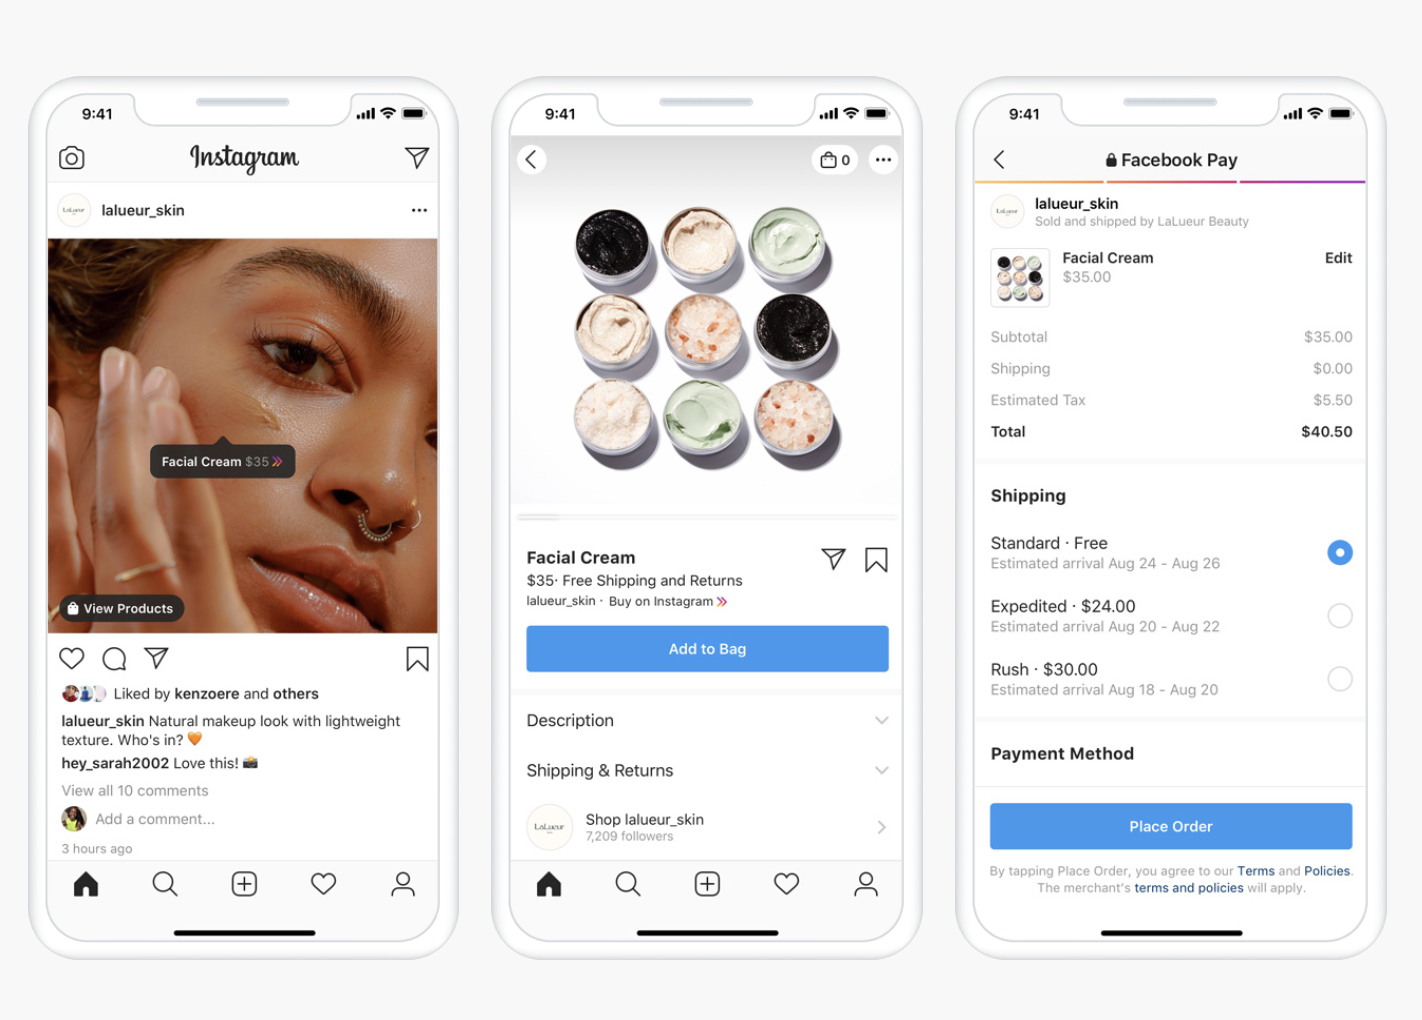 Bilde eine ganzheitliche Customer Journey mit deinem Instagram Shop ab